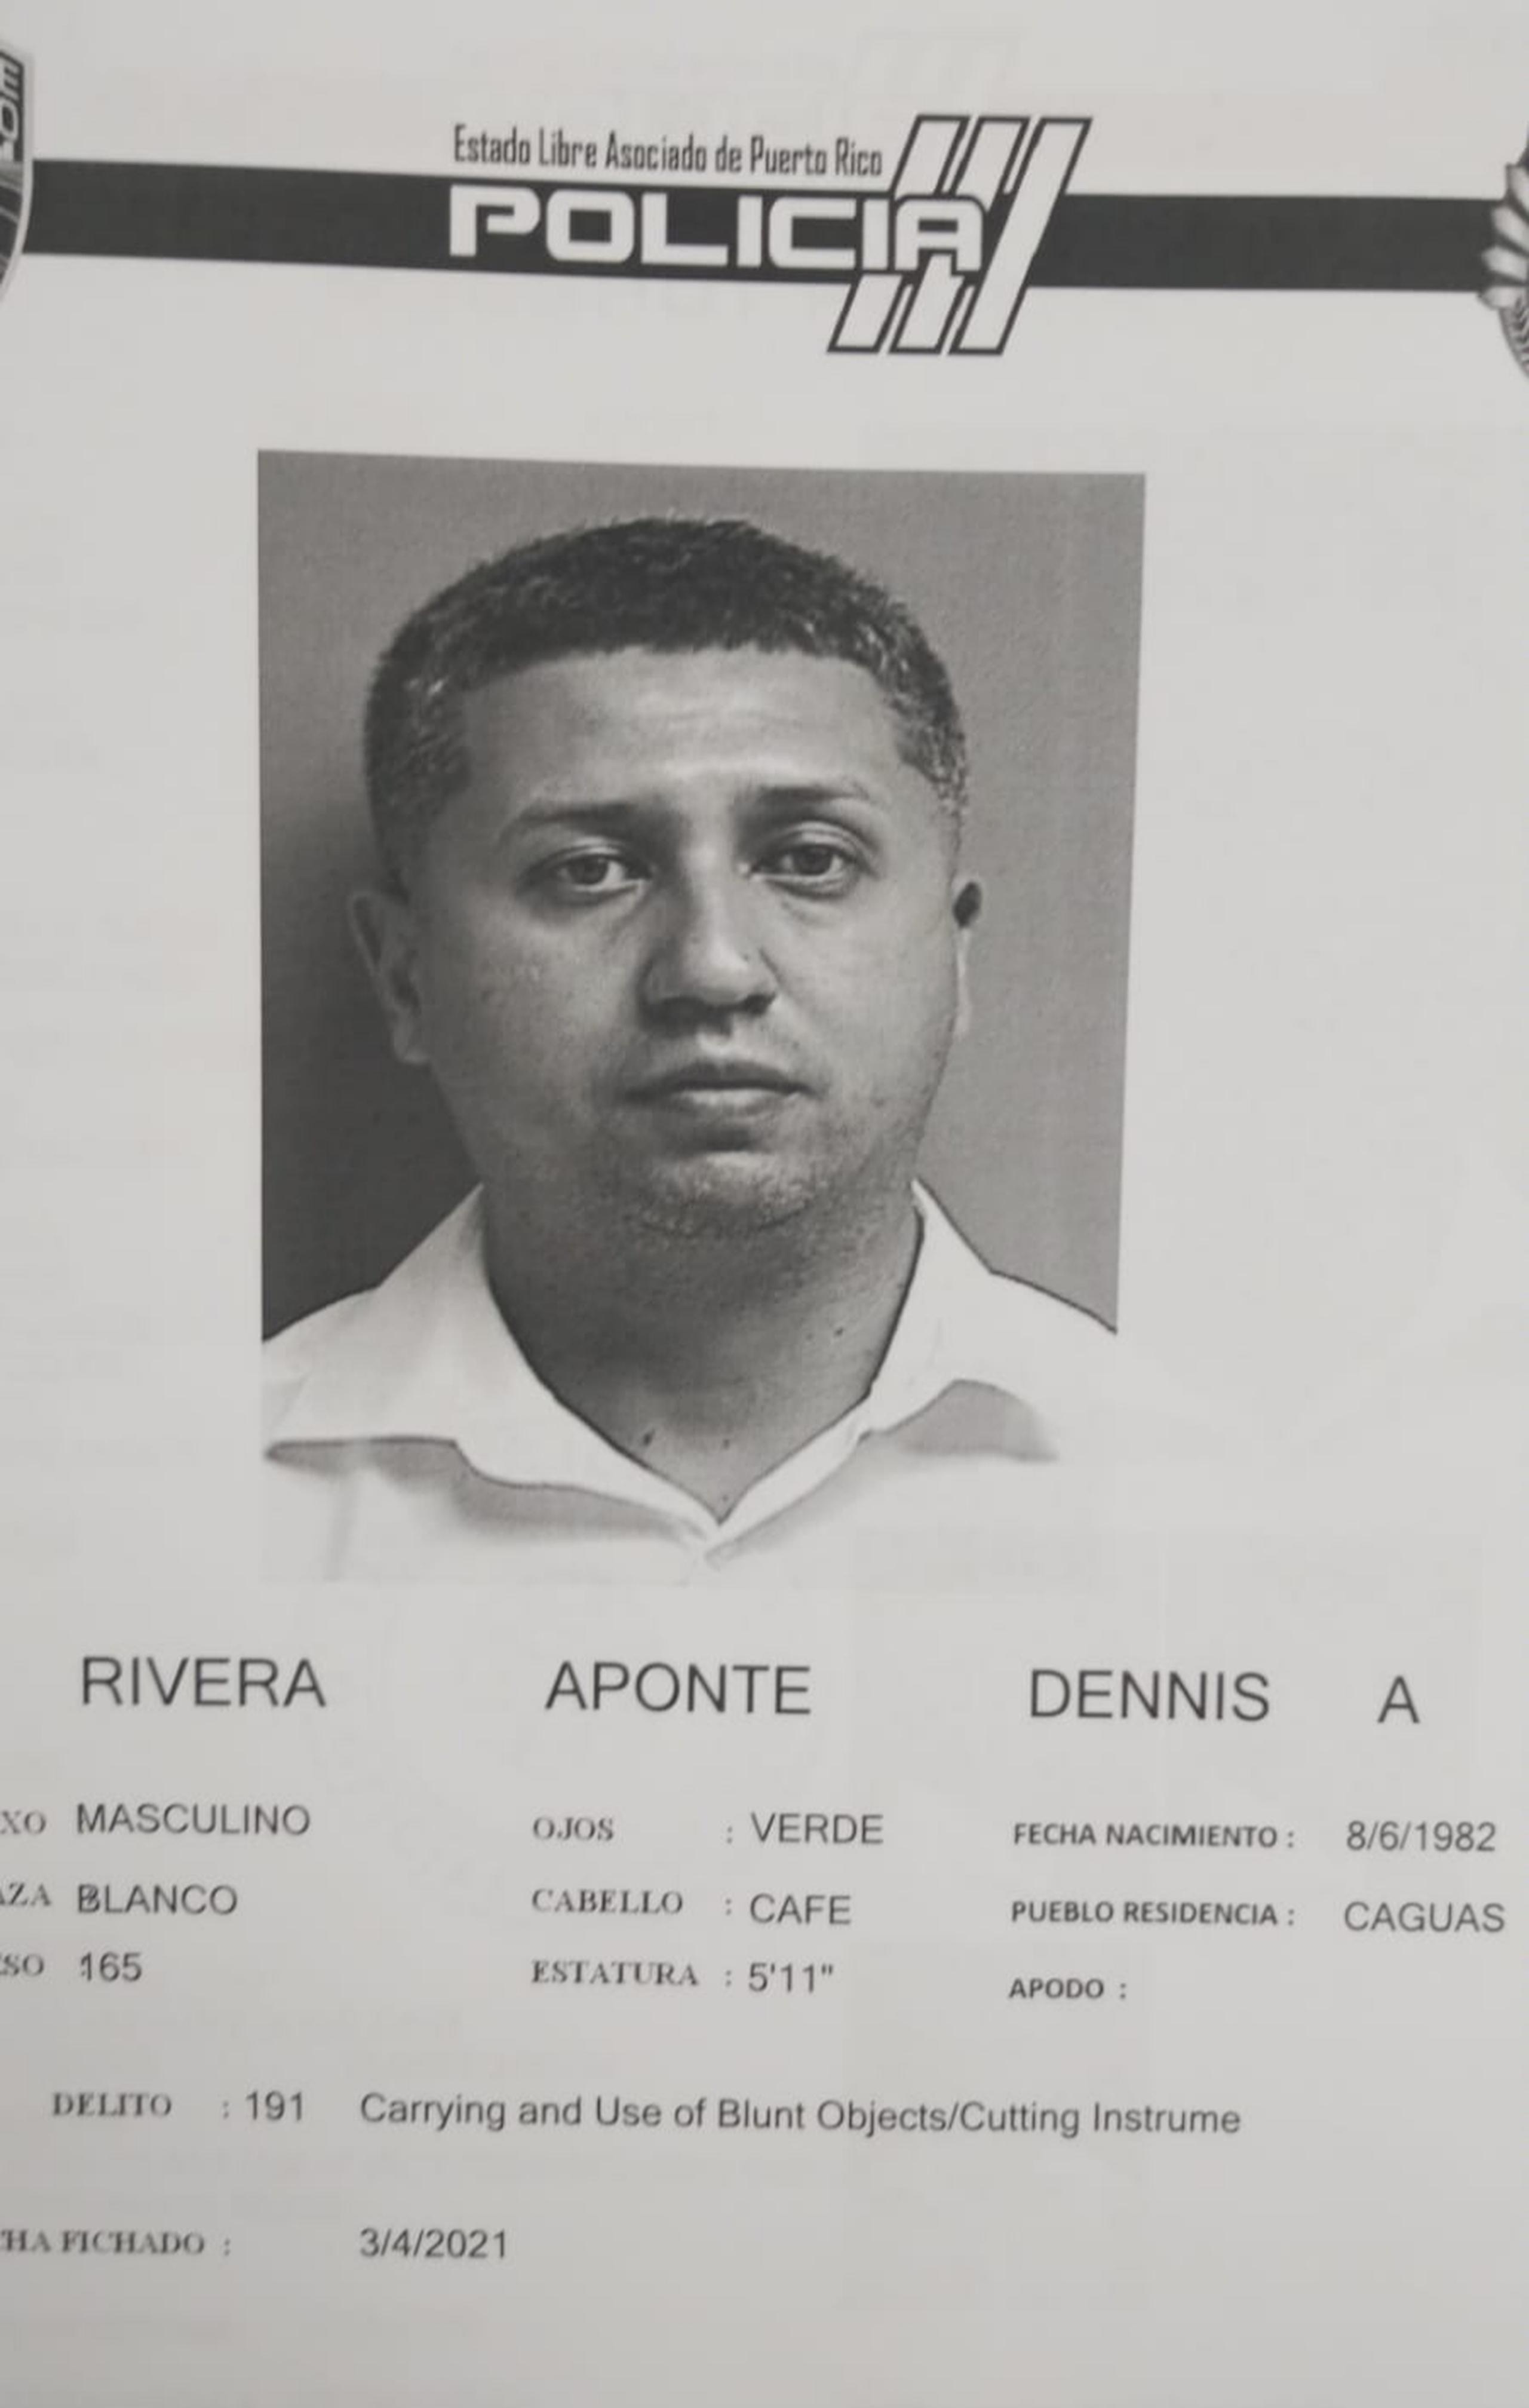 El juez Daniel López González, del Tribunal de Caguas, determinó causa para arresto por los delitos de asesinato en primer grado y violación al artículo 6.06 de la Ley de Armas contra Dennis Antonio Rivera Aponte, de 38 años, por el crimen de su pareja consensual Ileana Rodríguez Félix ocurrido el 25 de diciembre del año pasado.